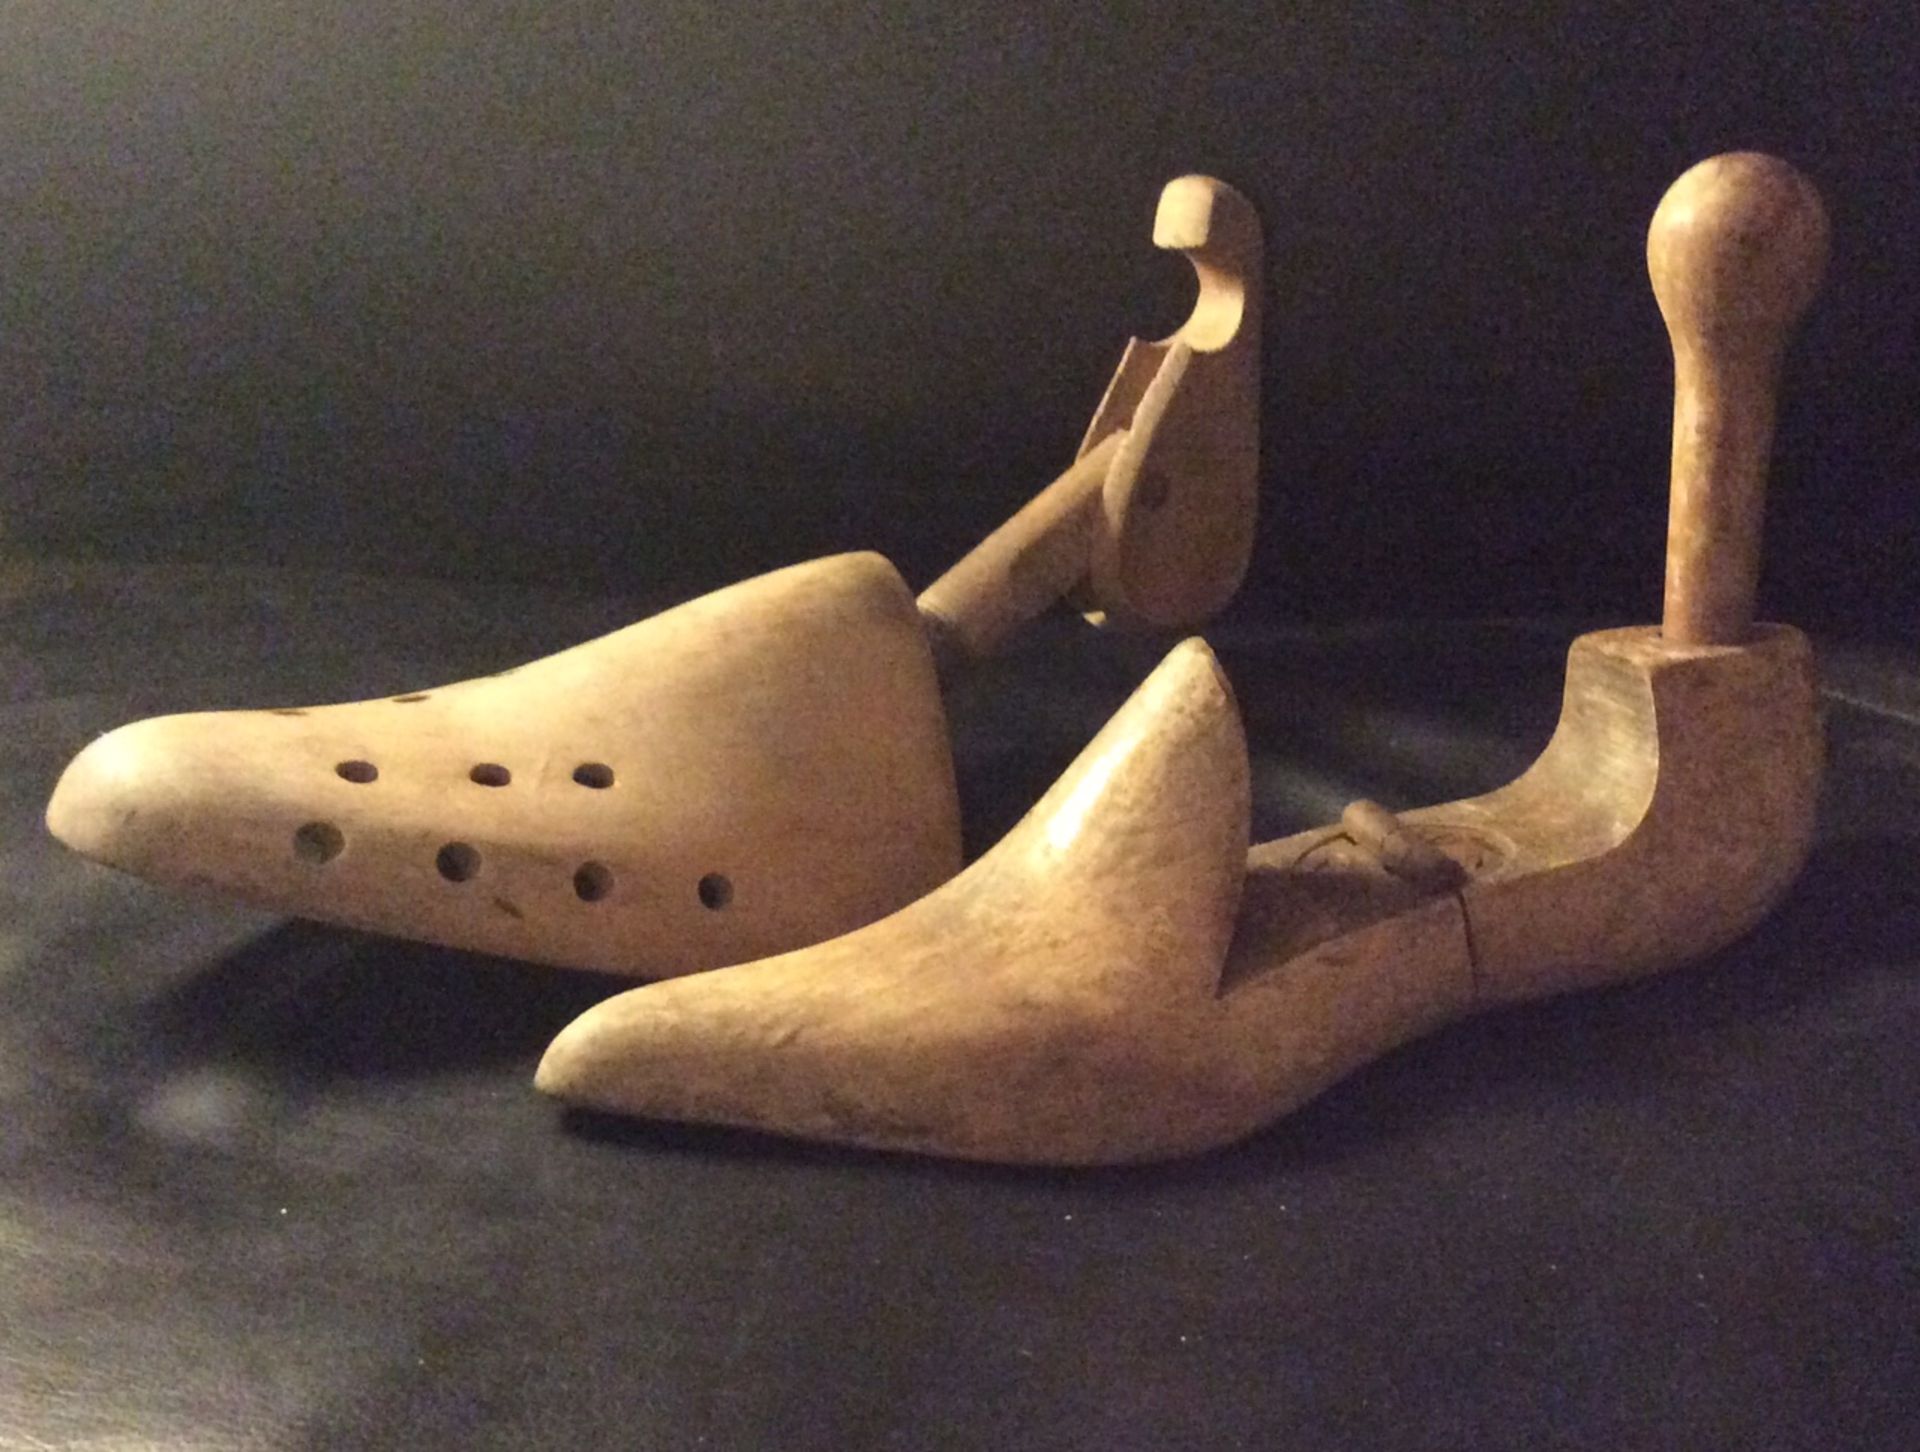 Pair of antique/vintage wooden shoe lasts